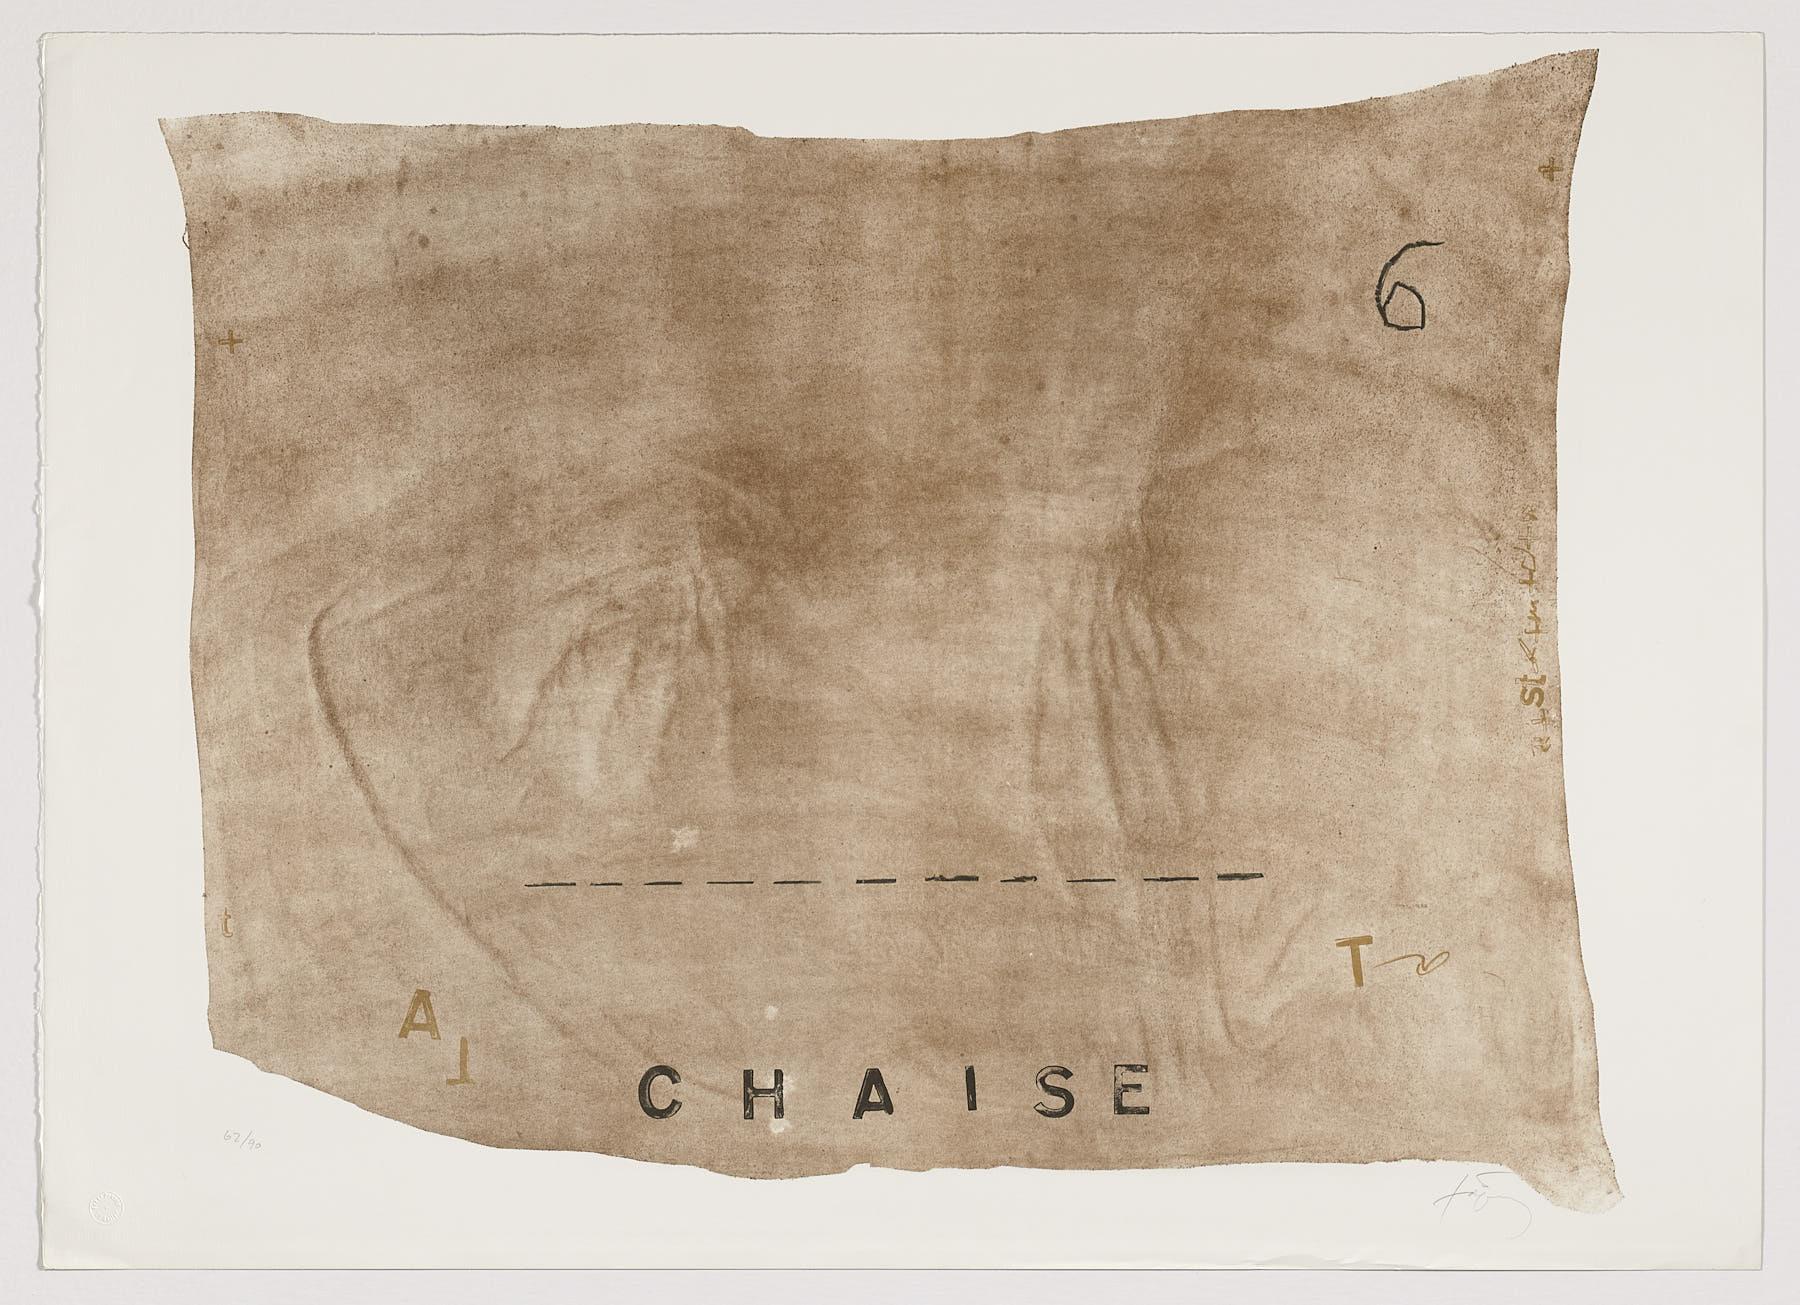 Abstract Print Antoni Tàpies - Lithographie d'artiste espagnol signée, édition limitée, numérotée n27